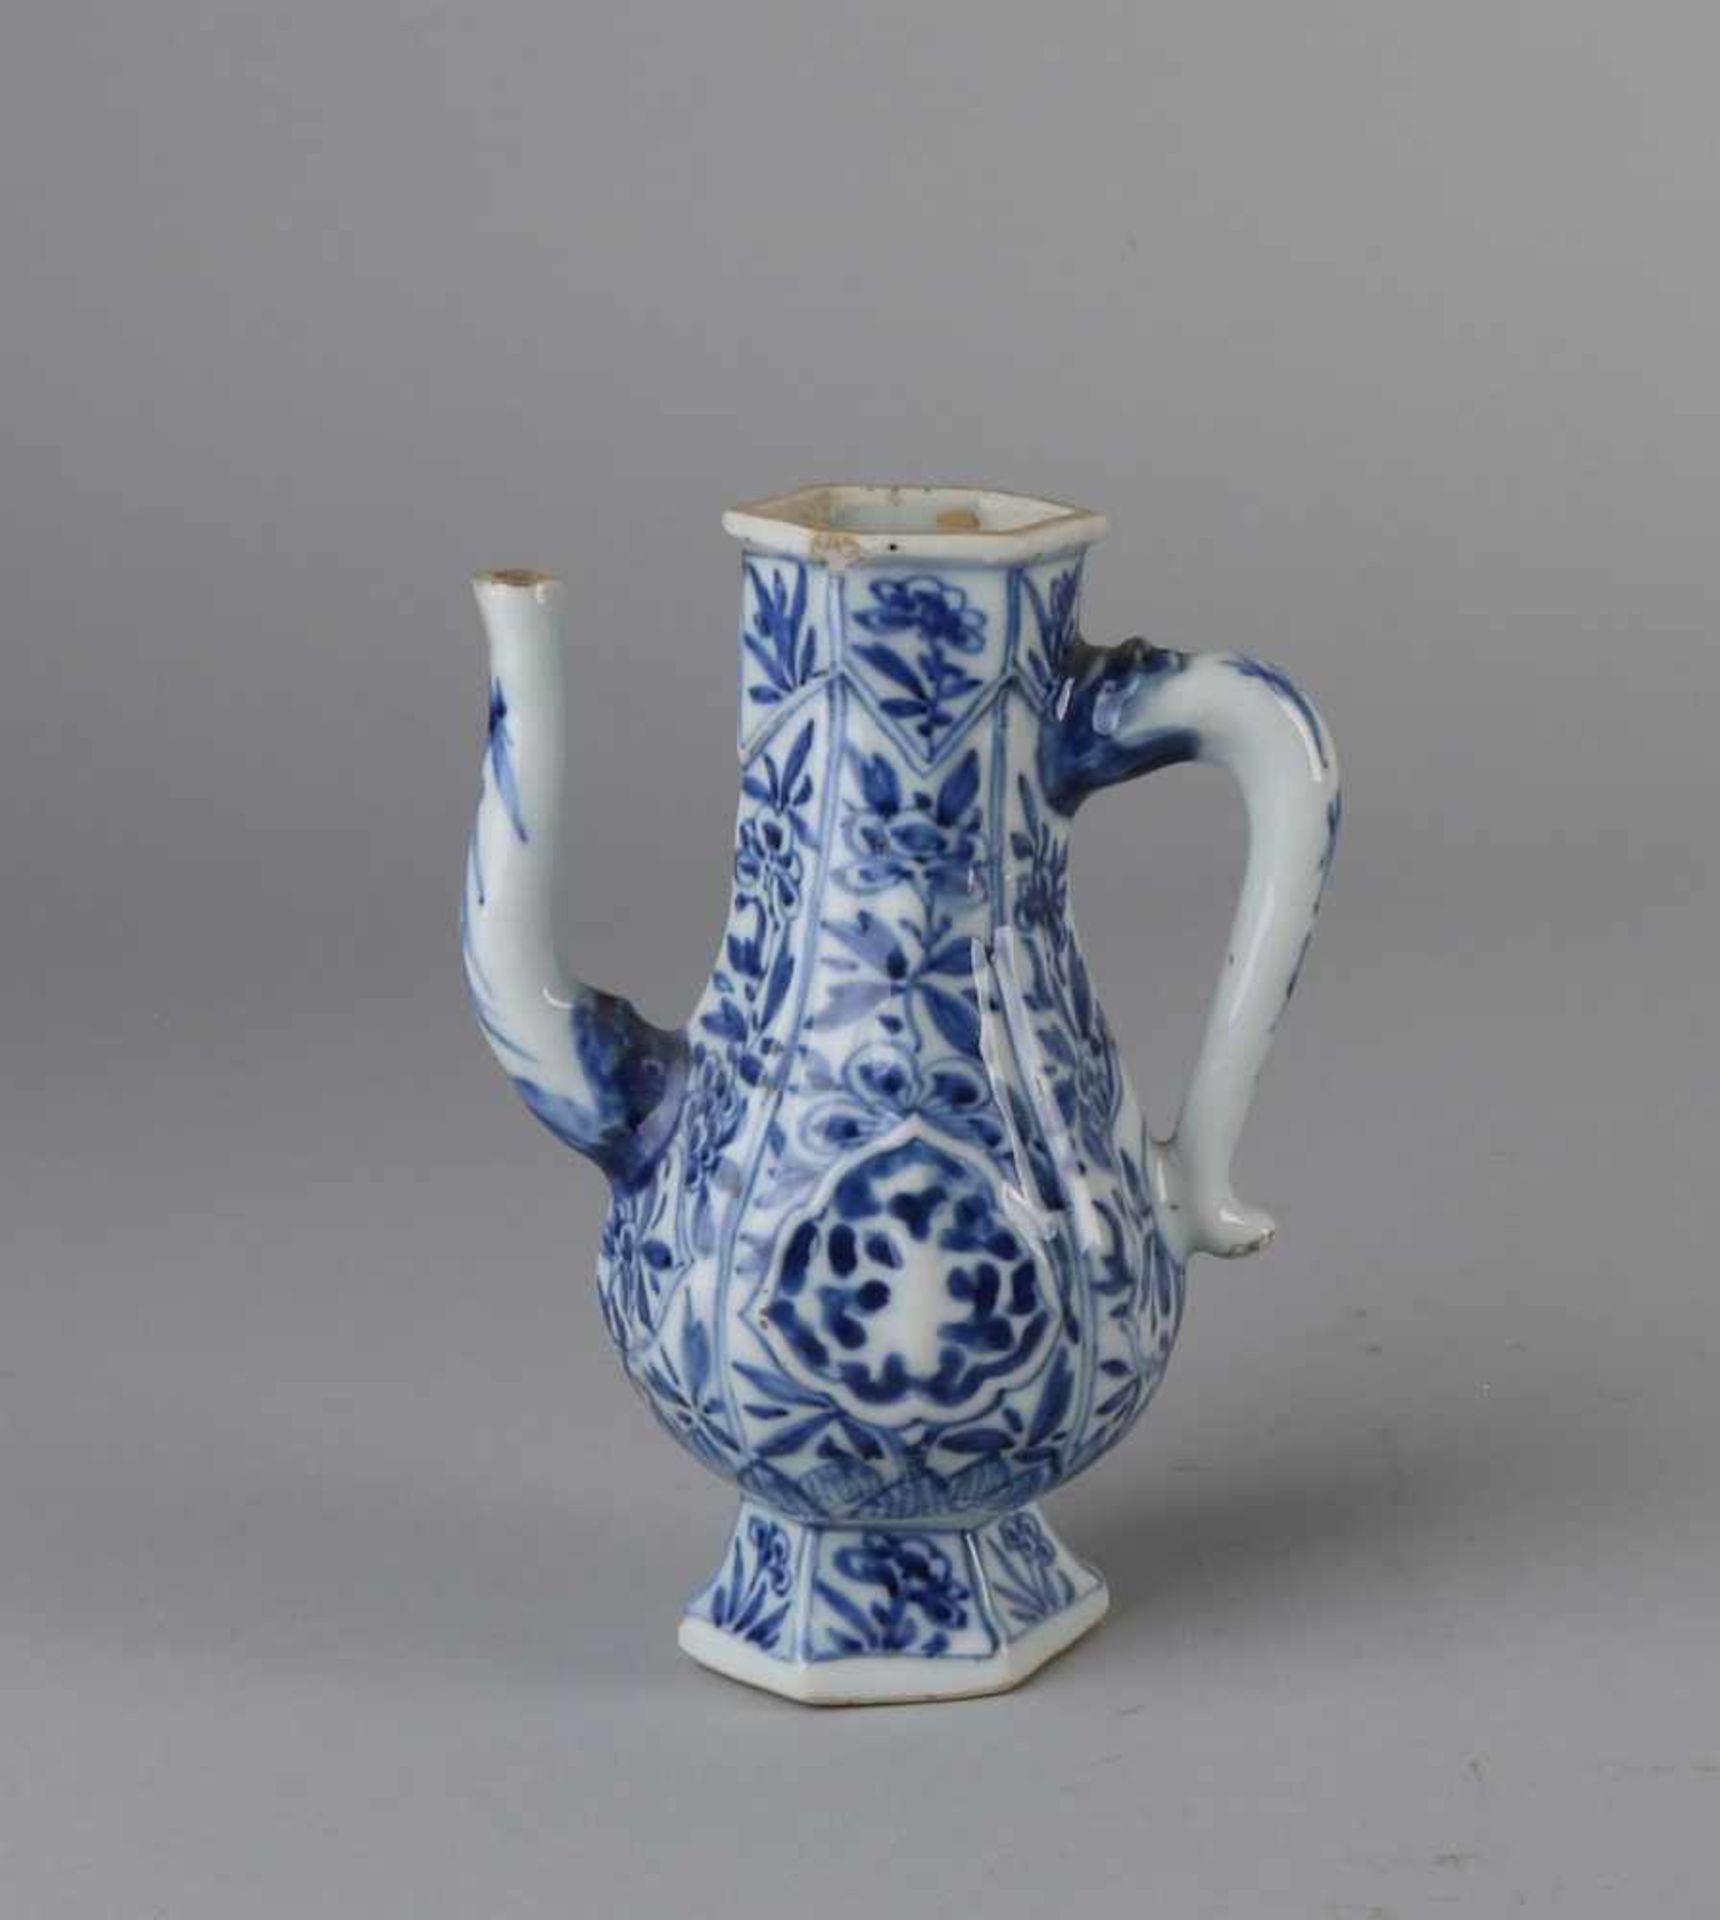 Gießkrug aus chinesischem Porzellan aus dem 17. - 18. Jahrhundert mit Blumendekor. Chip +